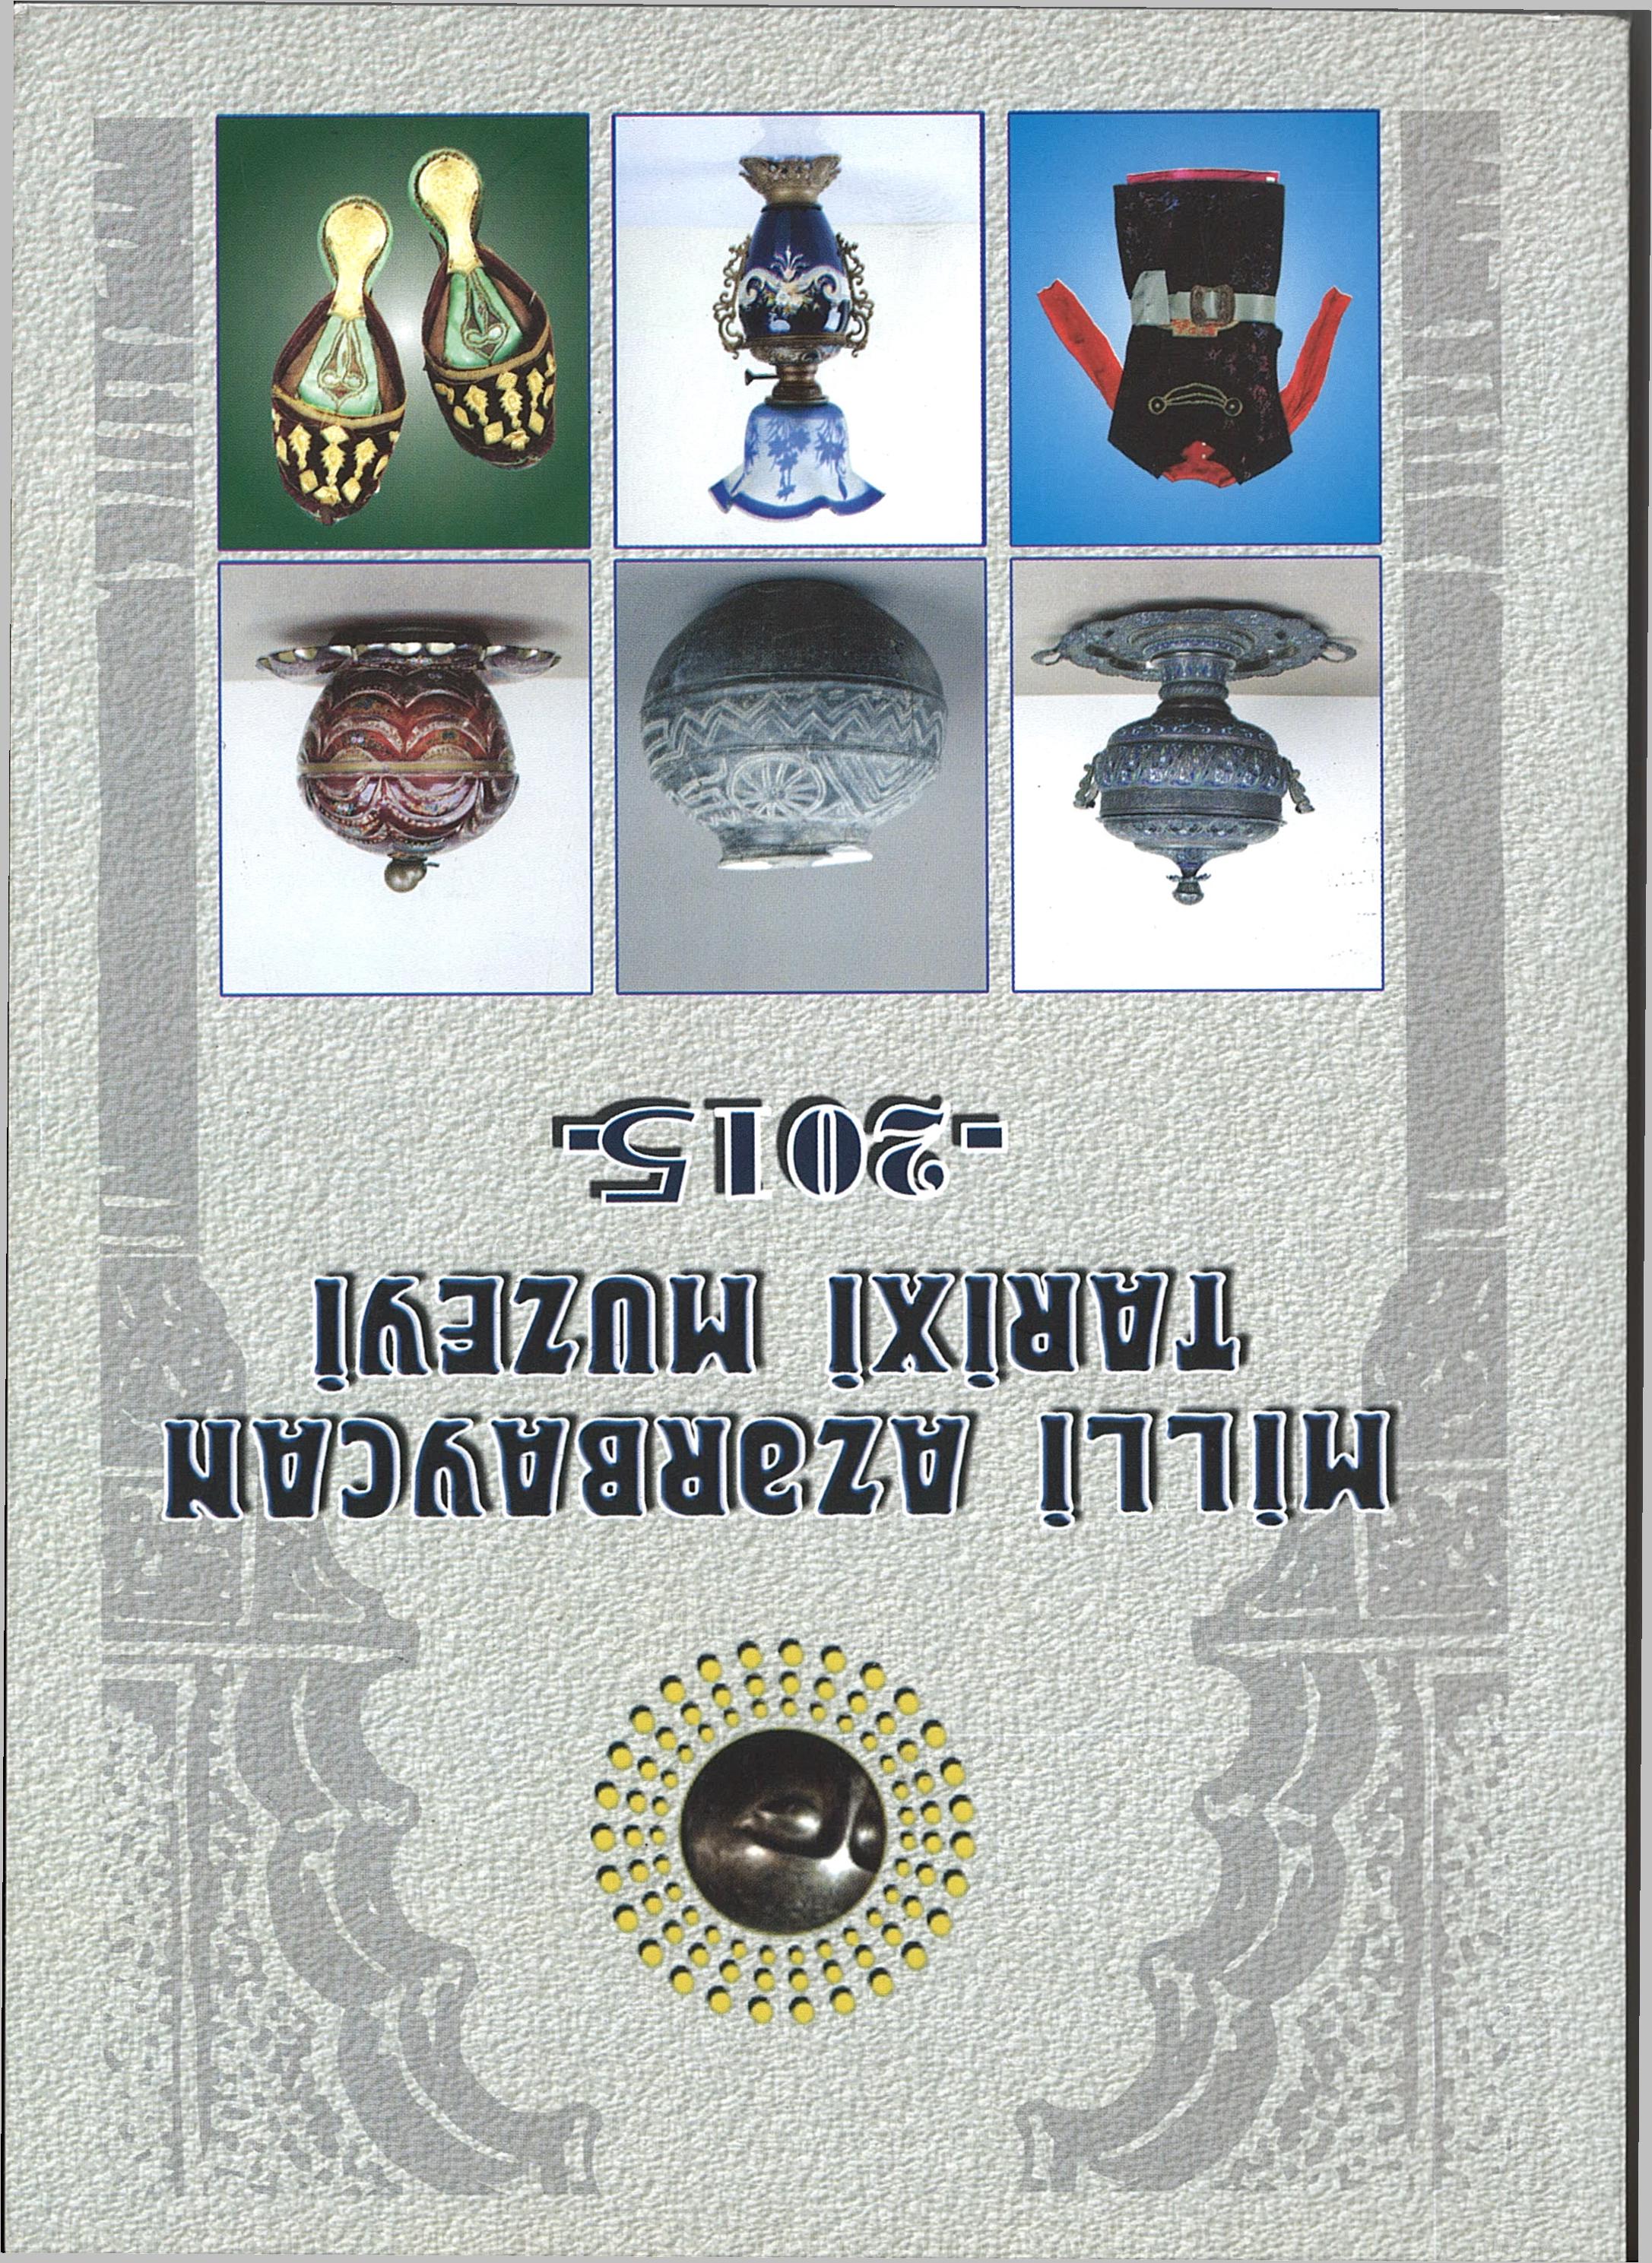  Milli Azərbaycan Tarixi Muzeyi 2015